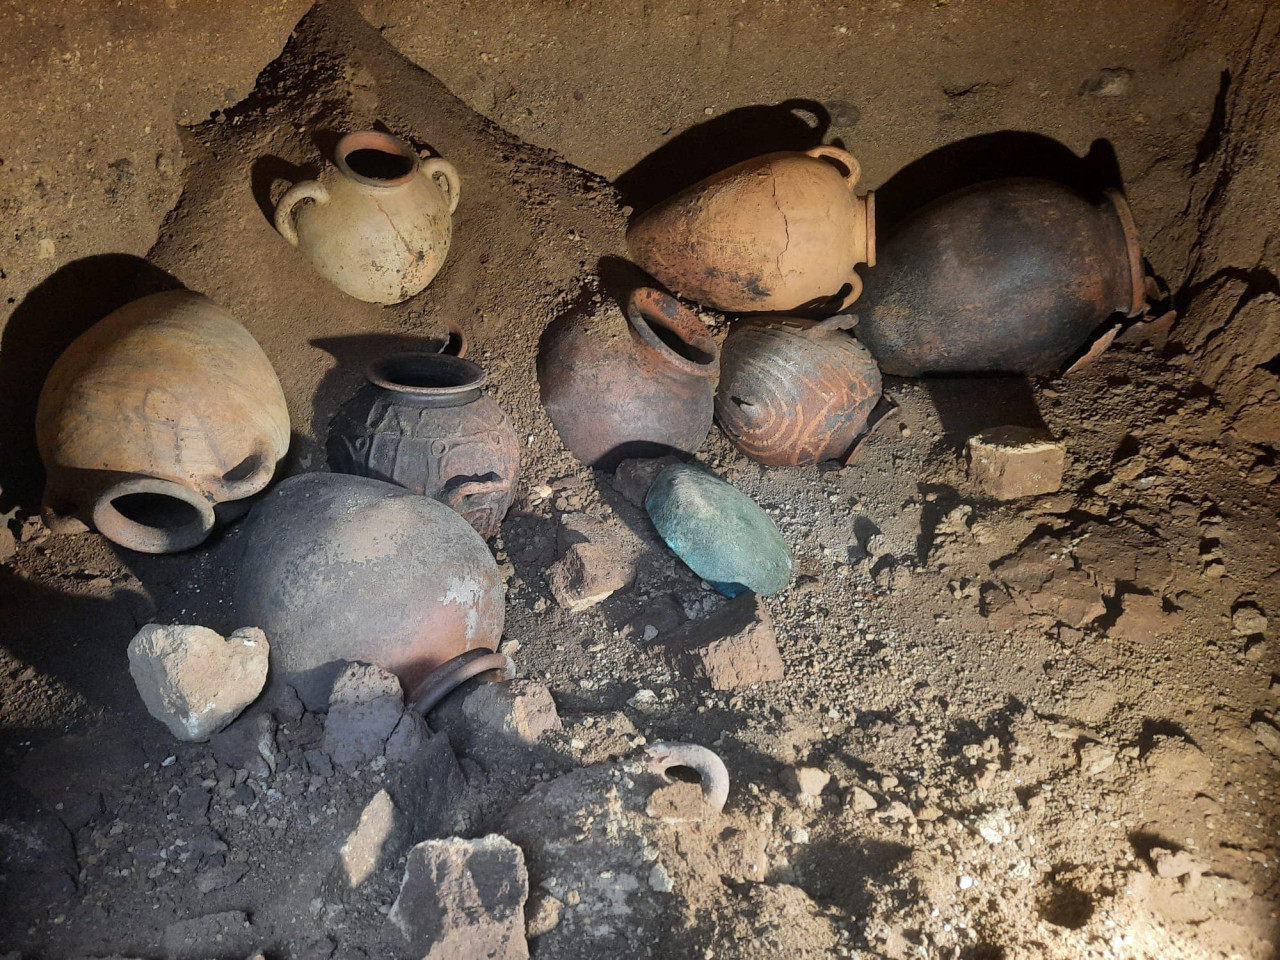 Algunos de los objetos encontrados en la tumba de la cavilación etrusca. Foto: Facebook/ Comune di Montalto di Castro